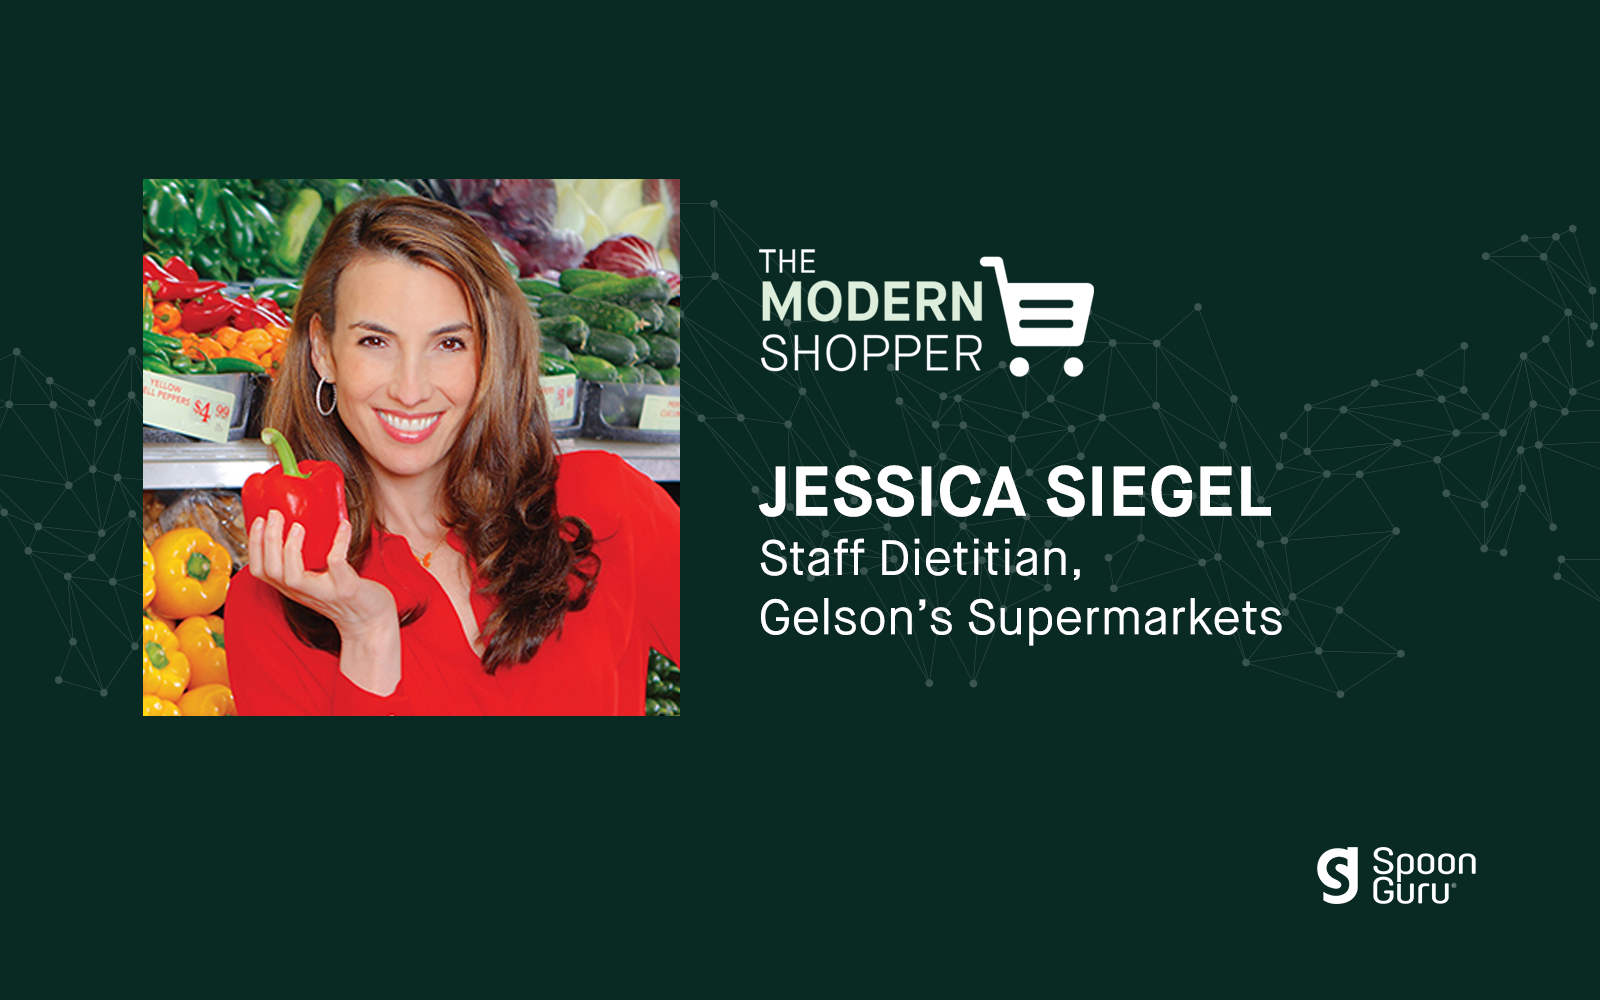 The Modern Shopper: Jessica Siegel from Gelson’s